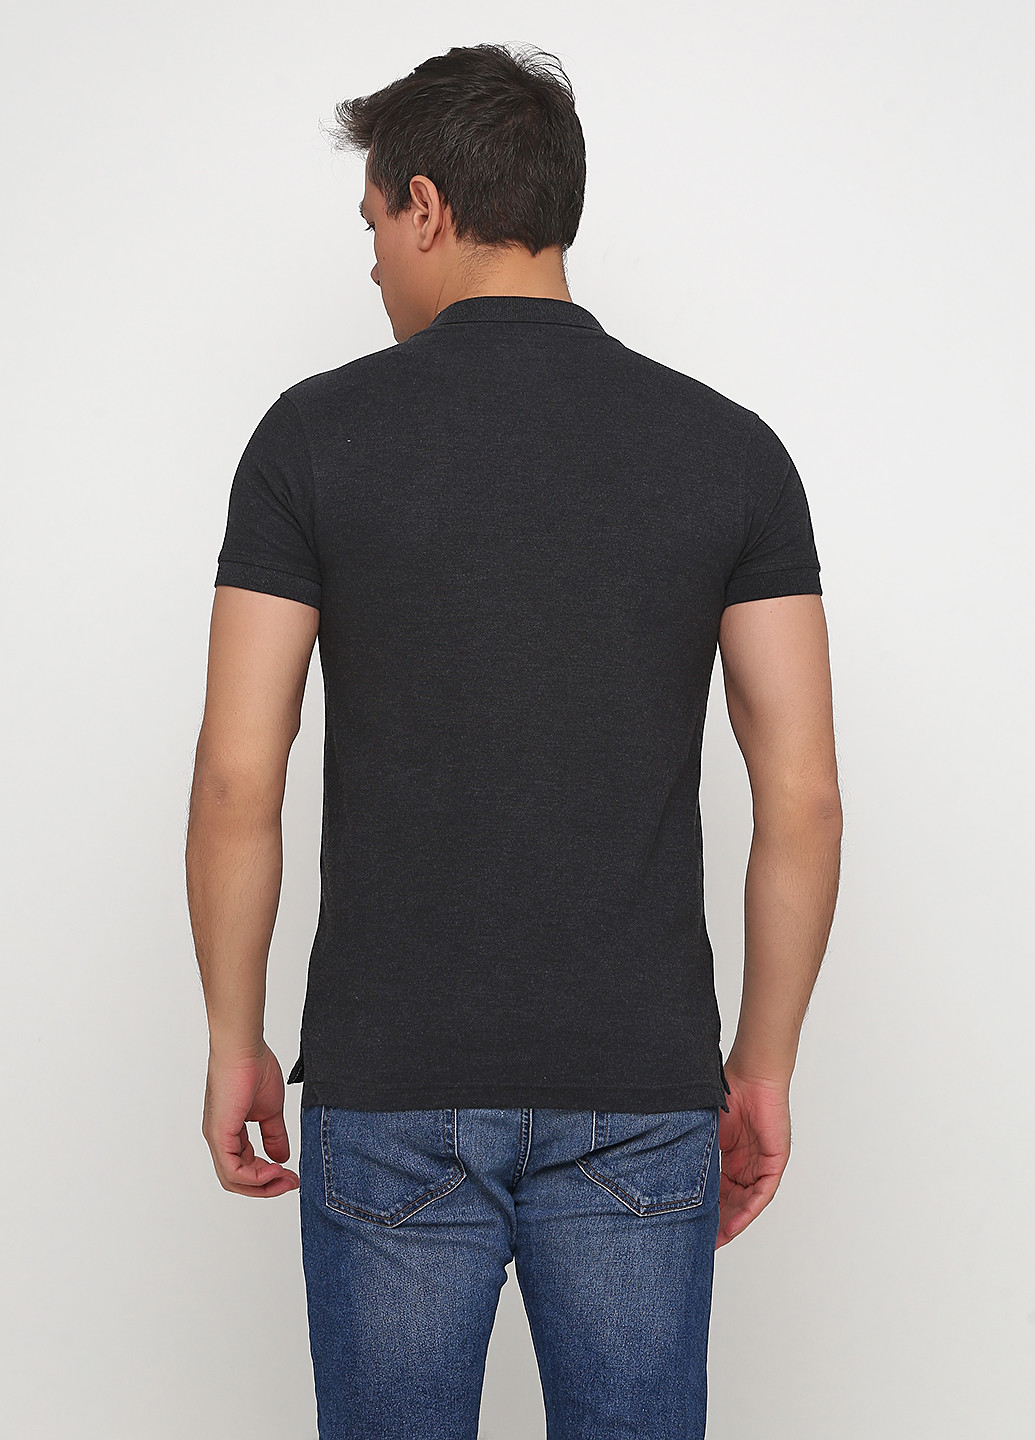 Темно-серая футболка-поло для мужчин No Brand однотонная